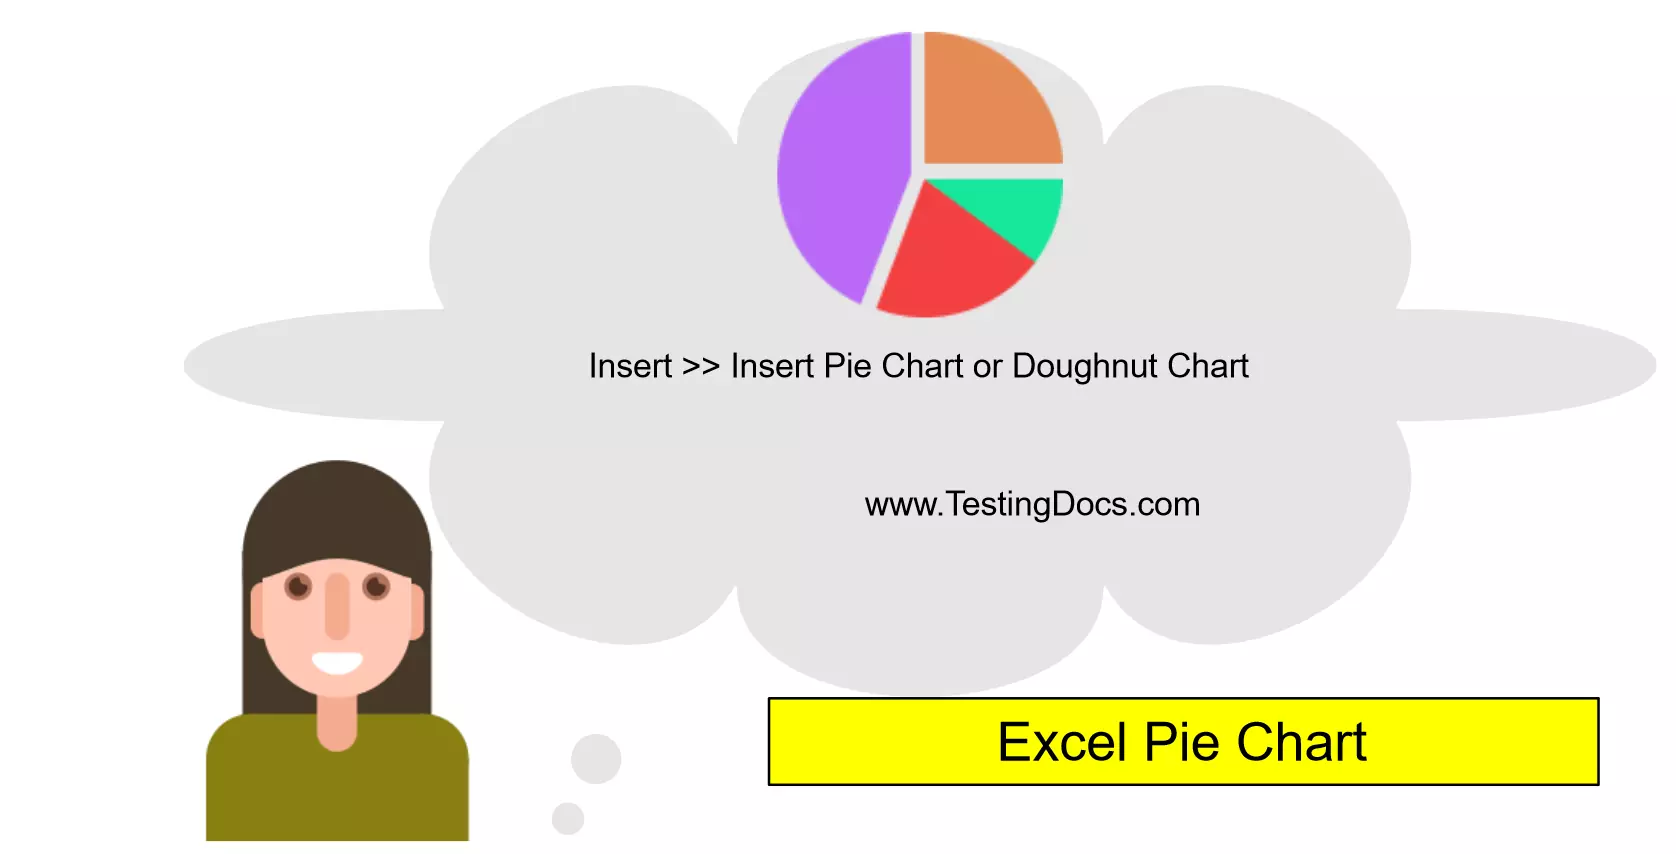 Excel Pie Chart Cloud